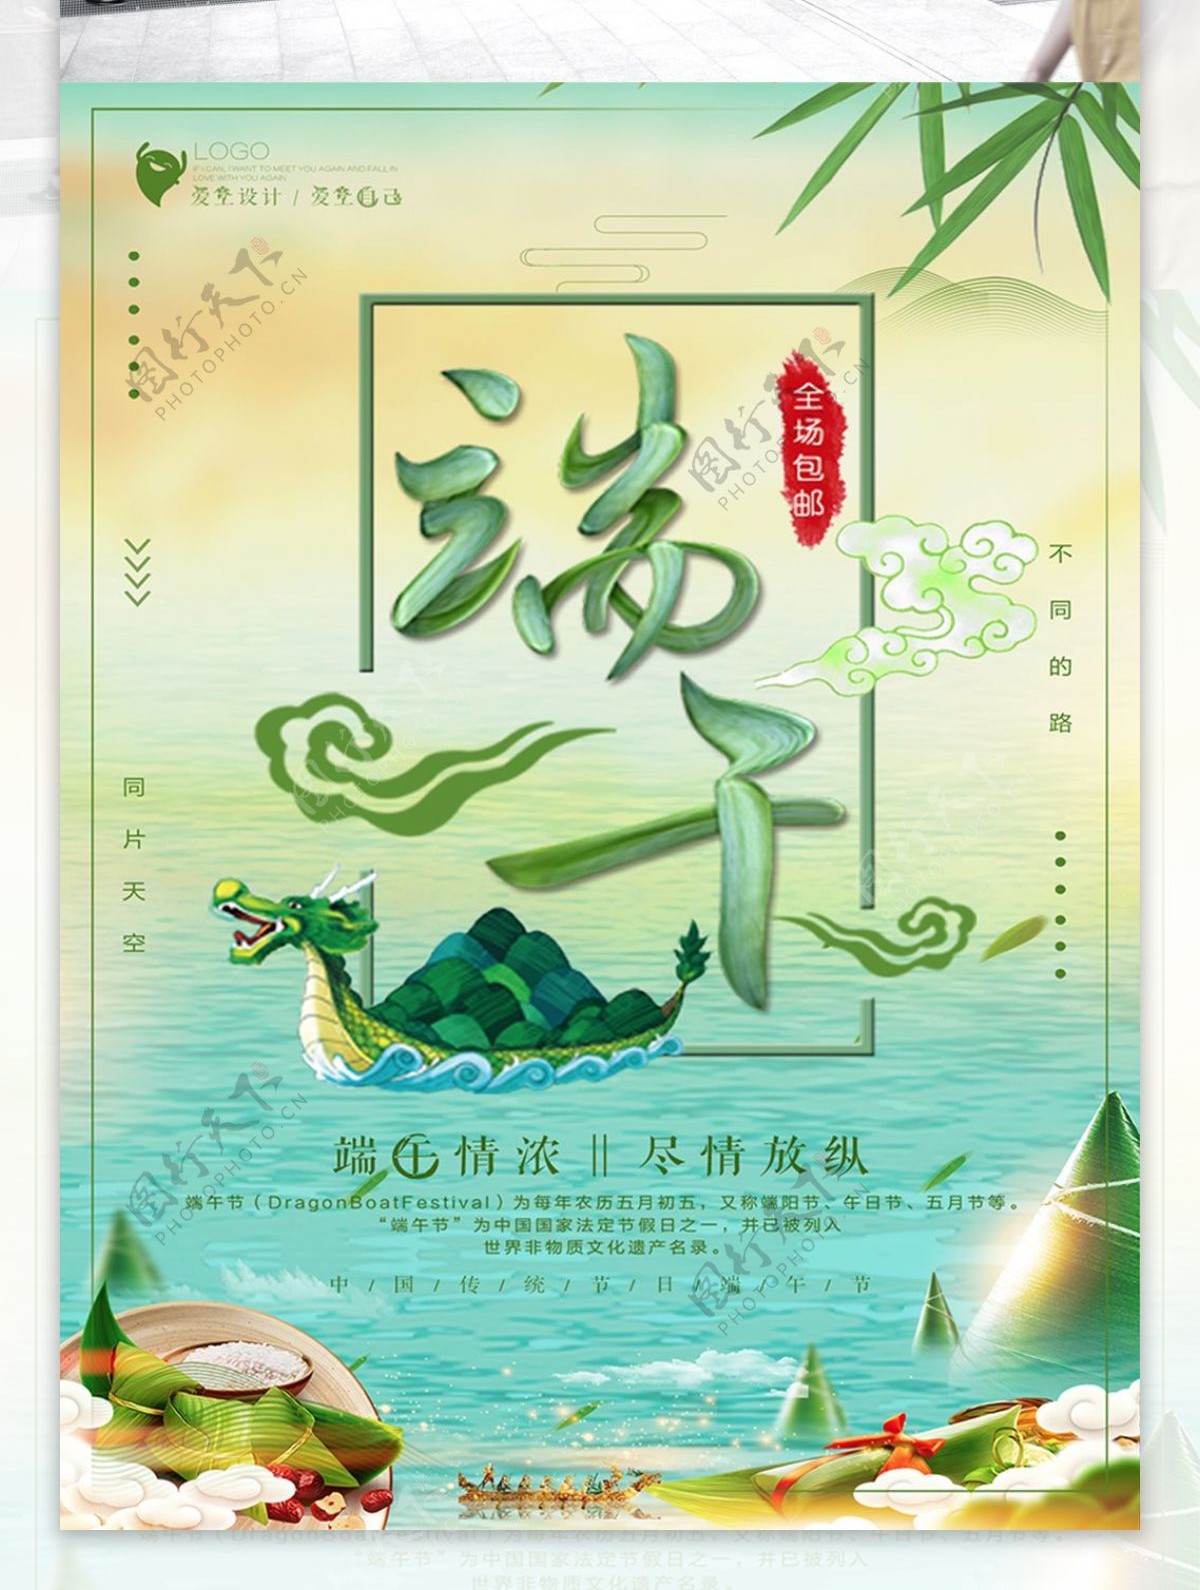 大气端午节吃粽子赛龙舟海报设计